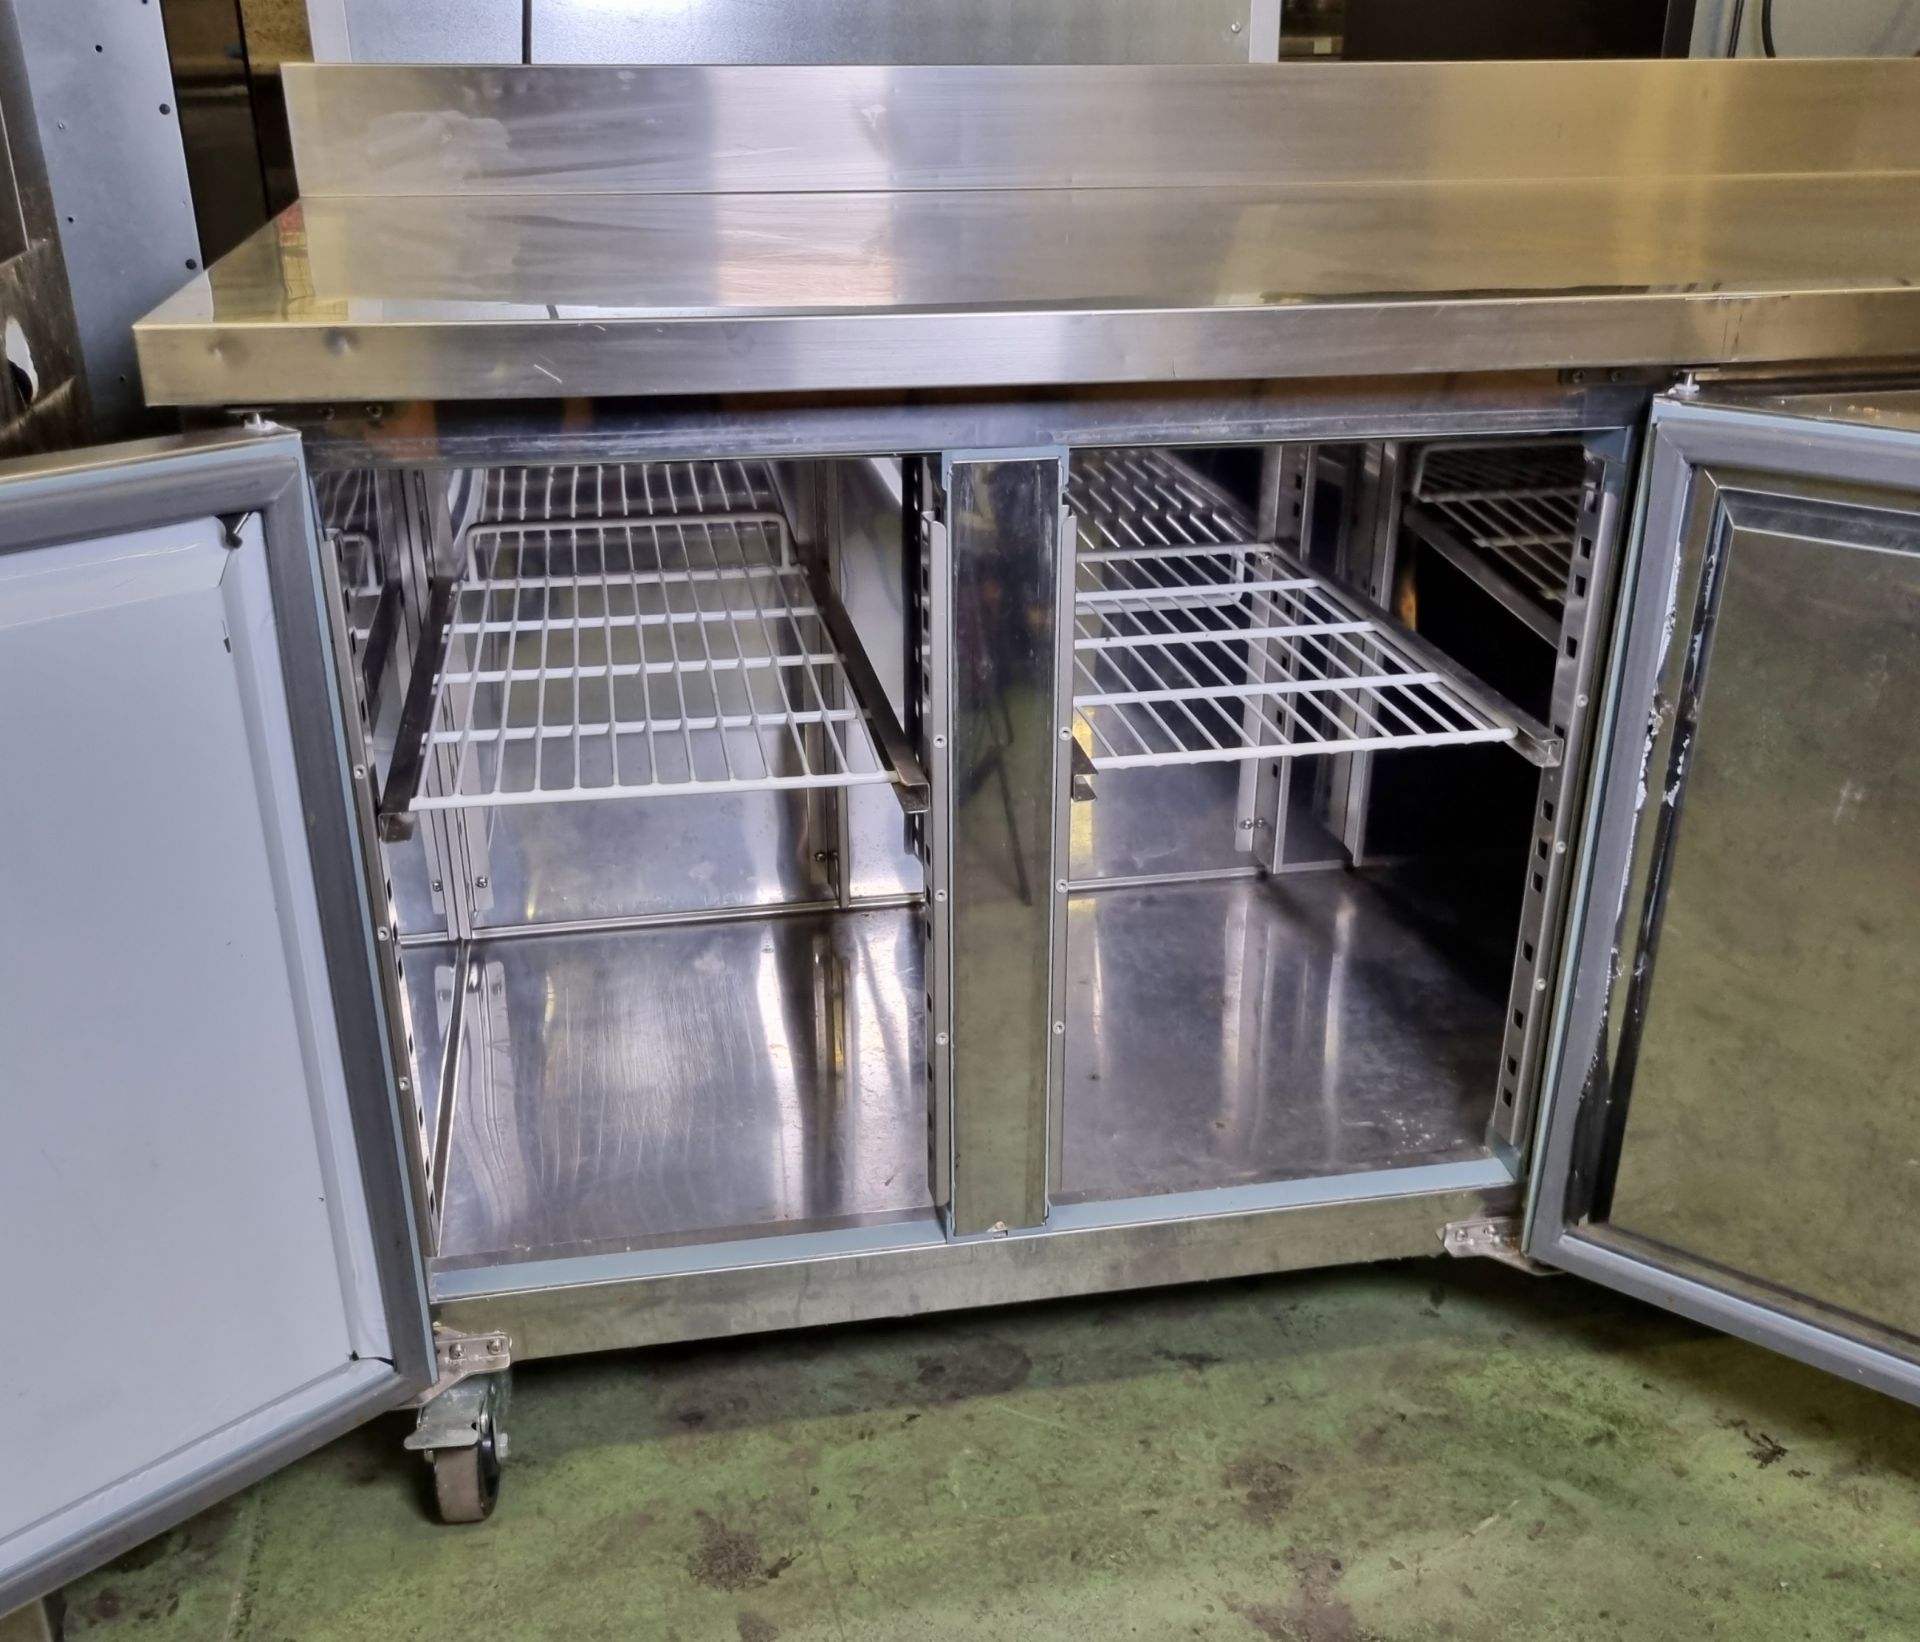 Polar DL917 stainless steel 3 door counter freezer - W 1800 x D 700 x H 950mm - Bild 4 aus 4